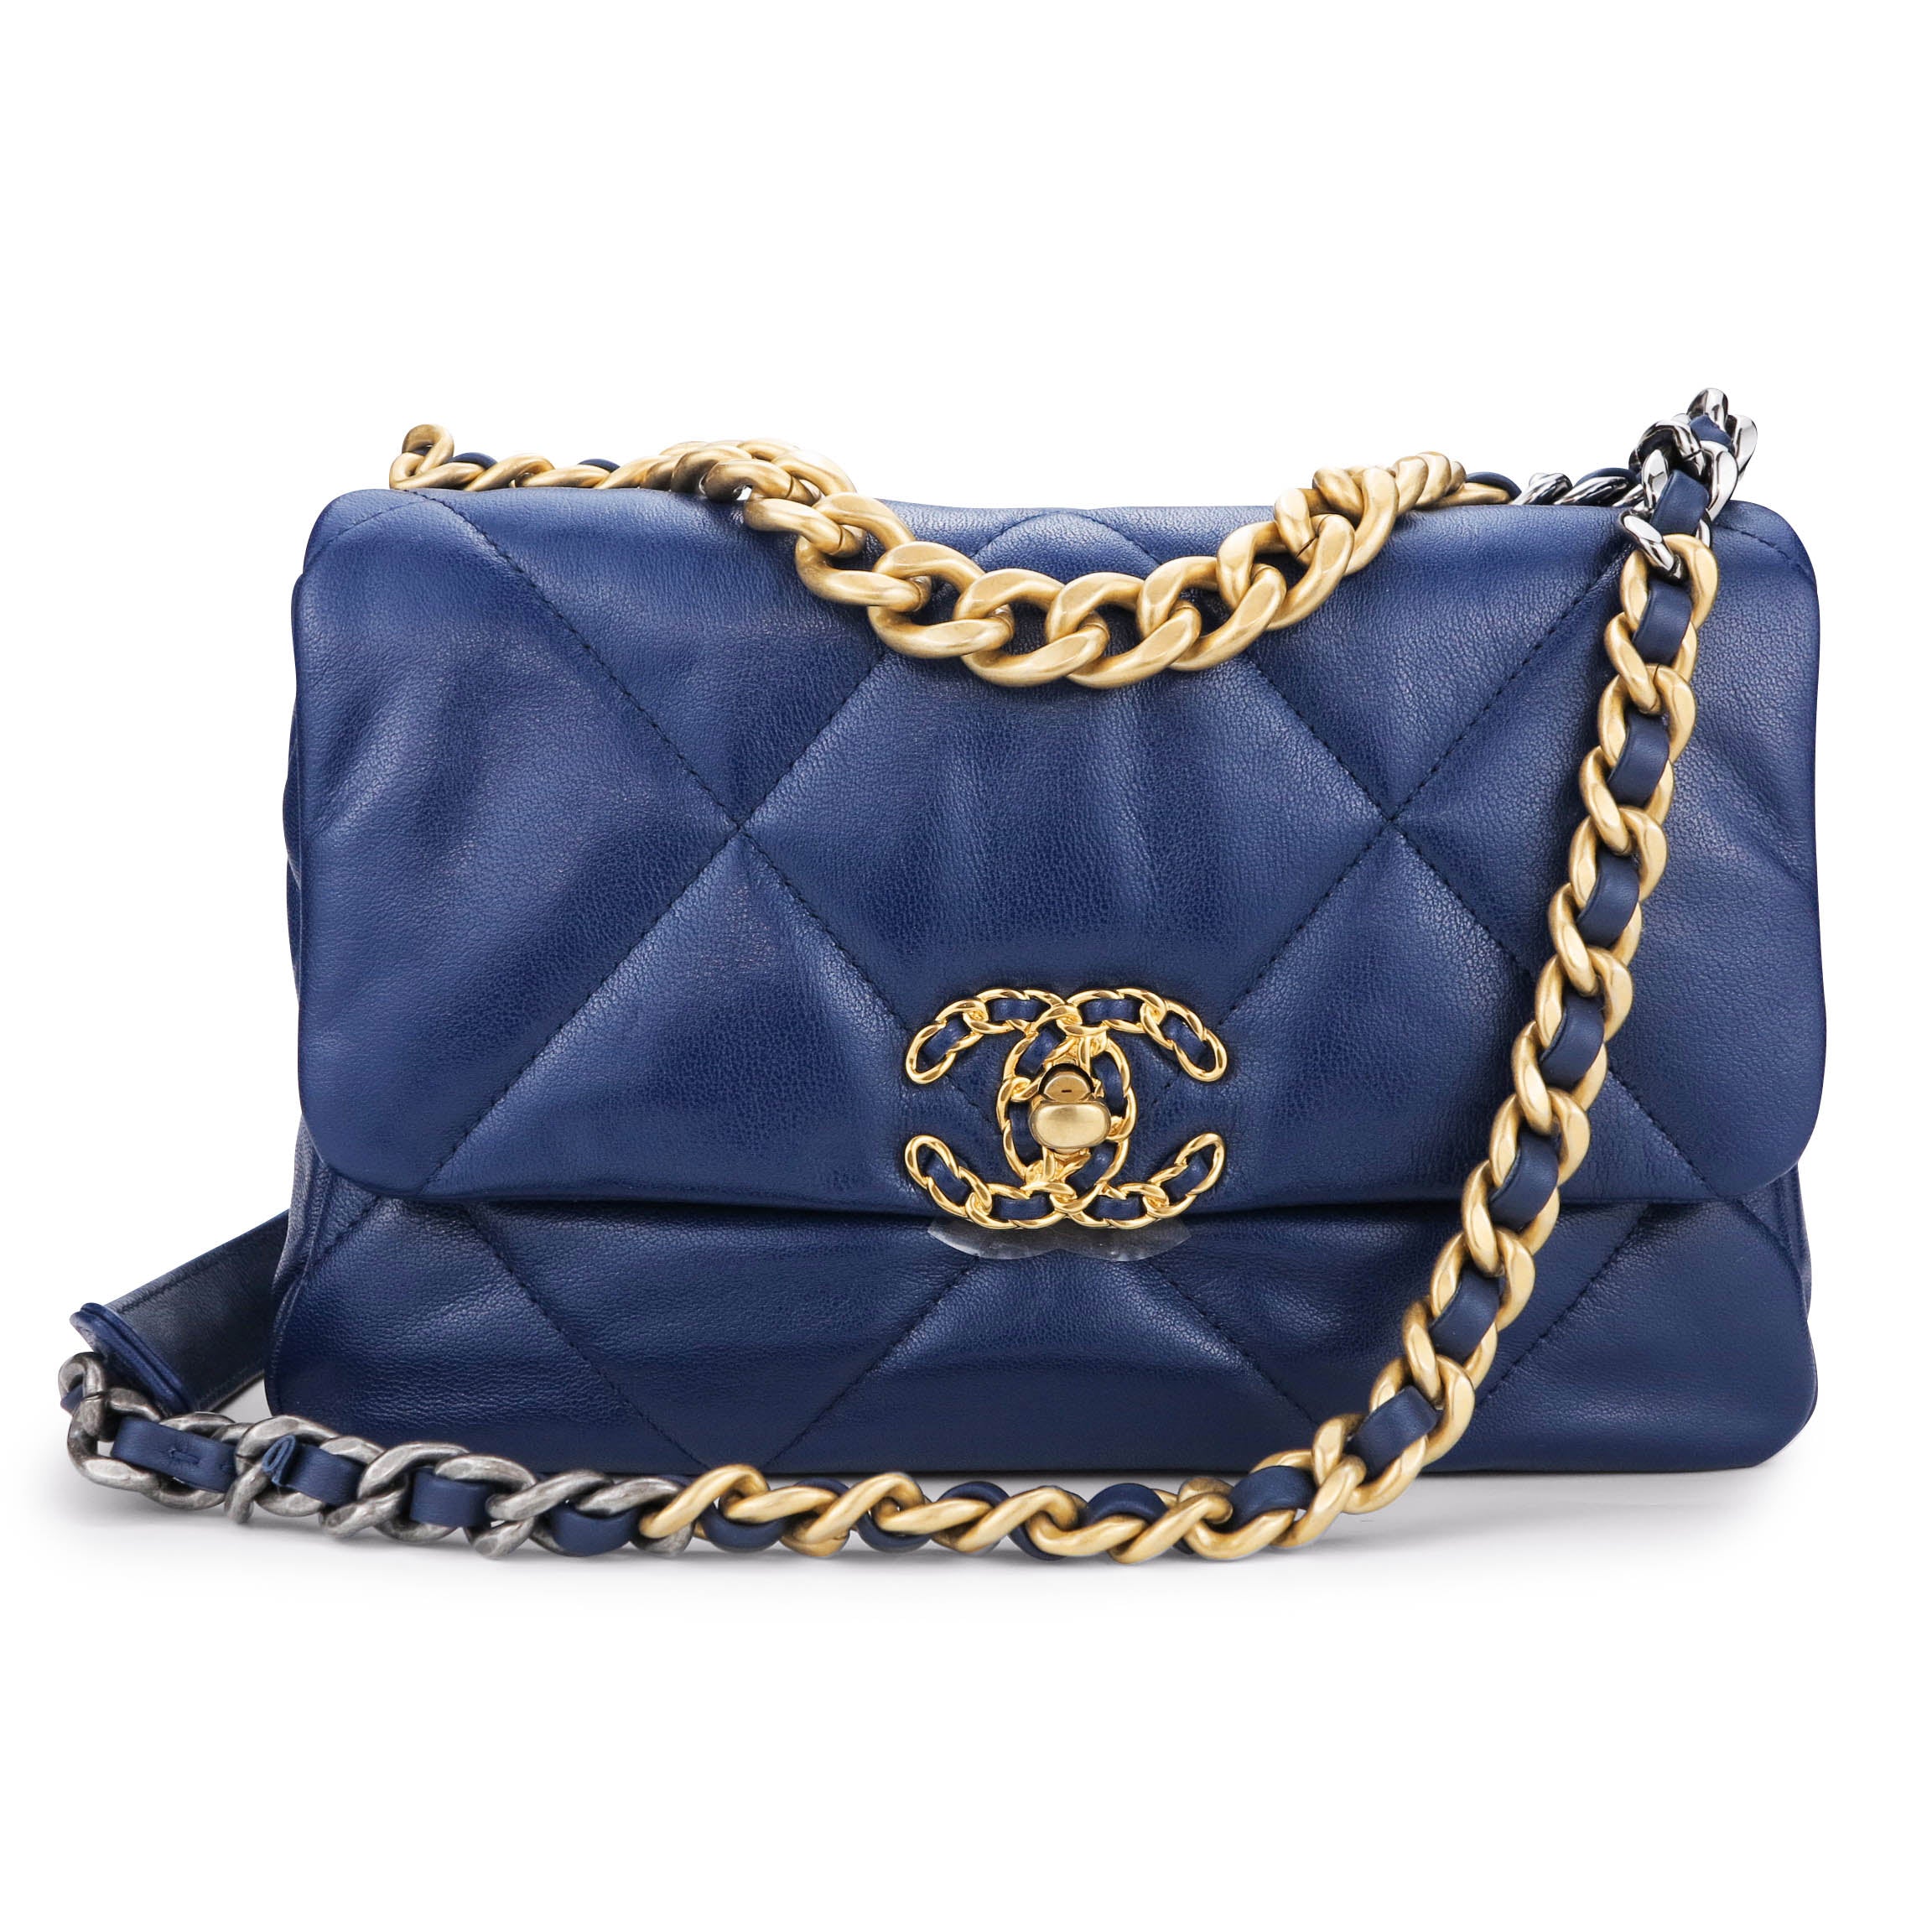 Chanel 19 cloth handbag Chanel Blue in Cloth - 37137541